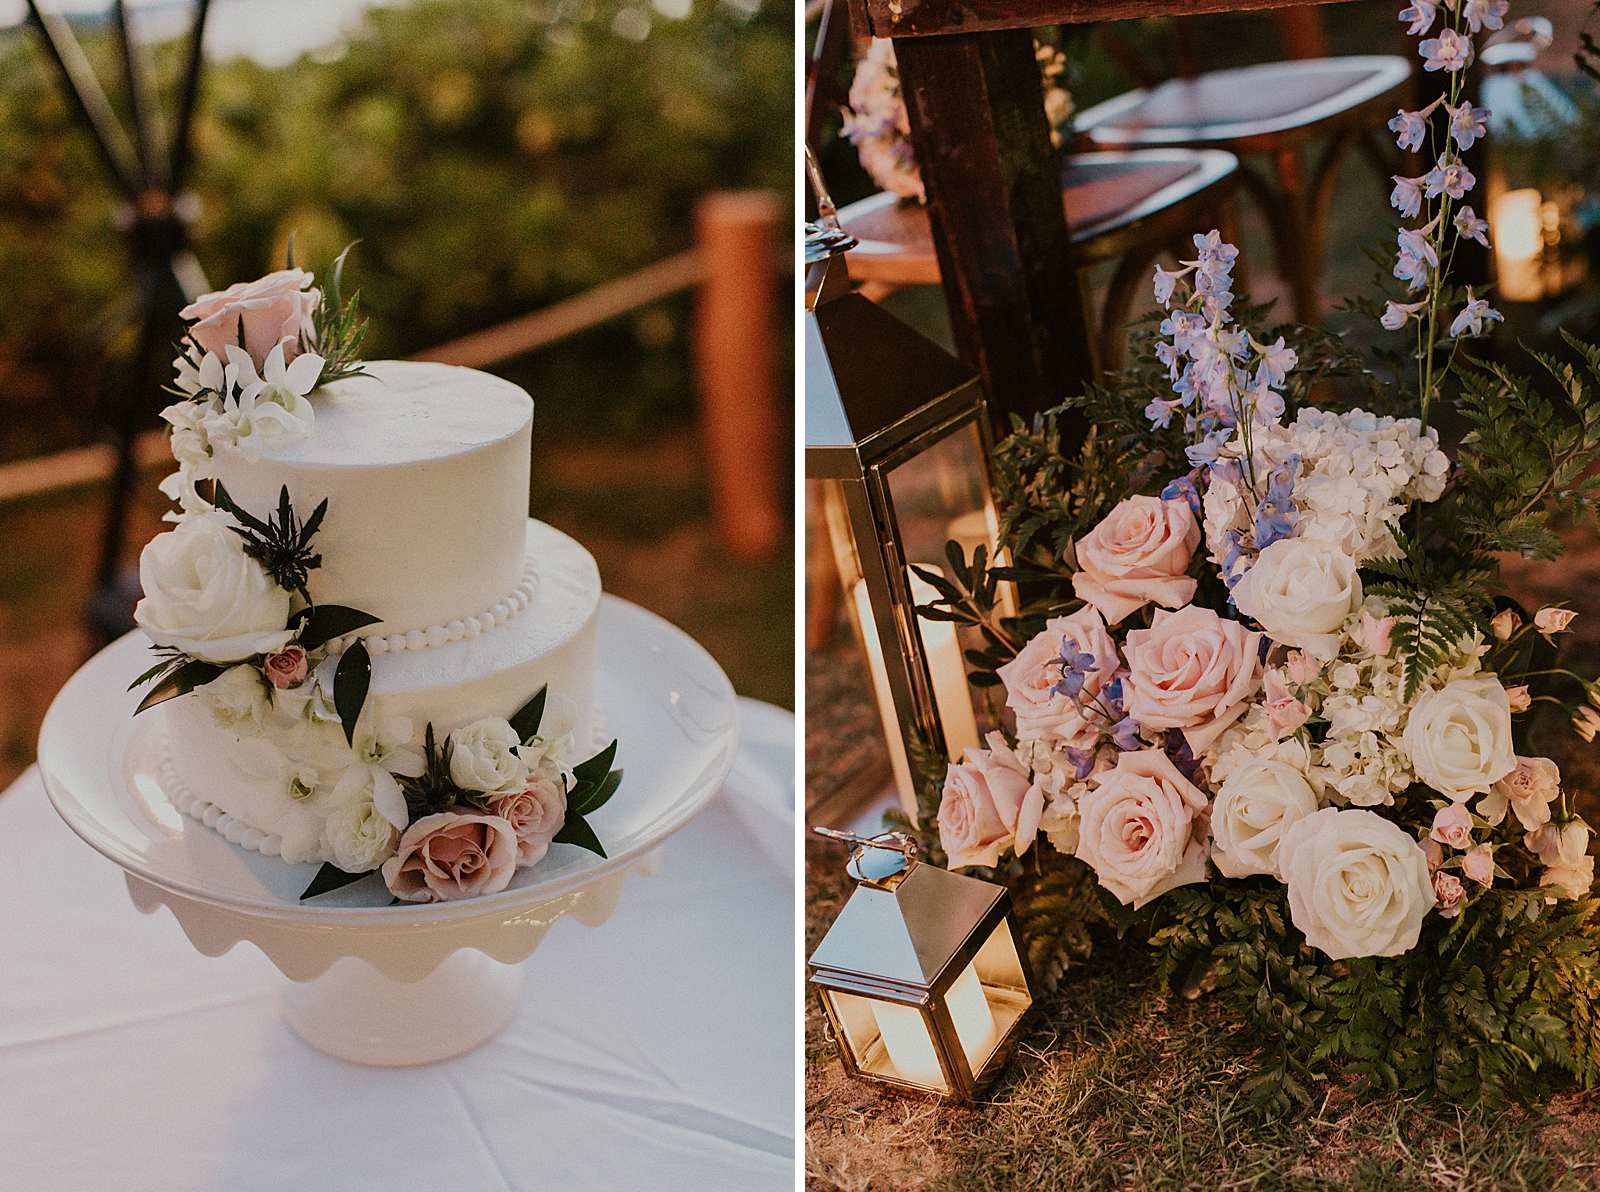 Detail shot of floral wedding cake